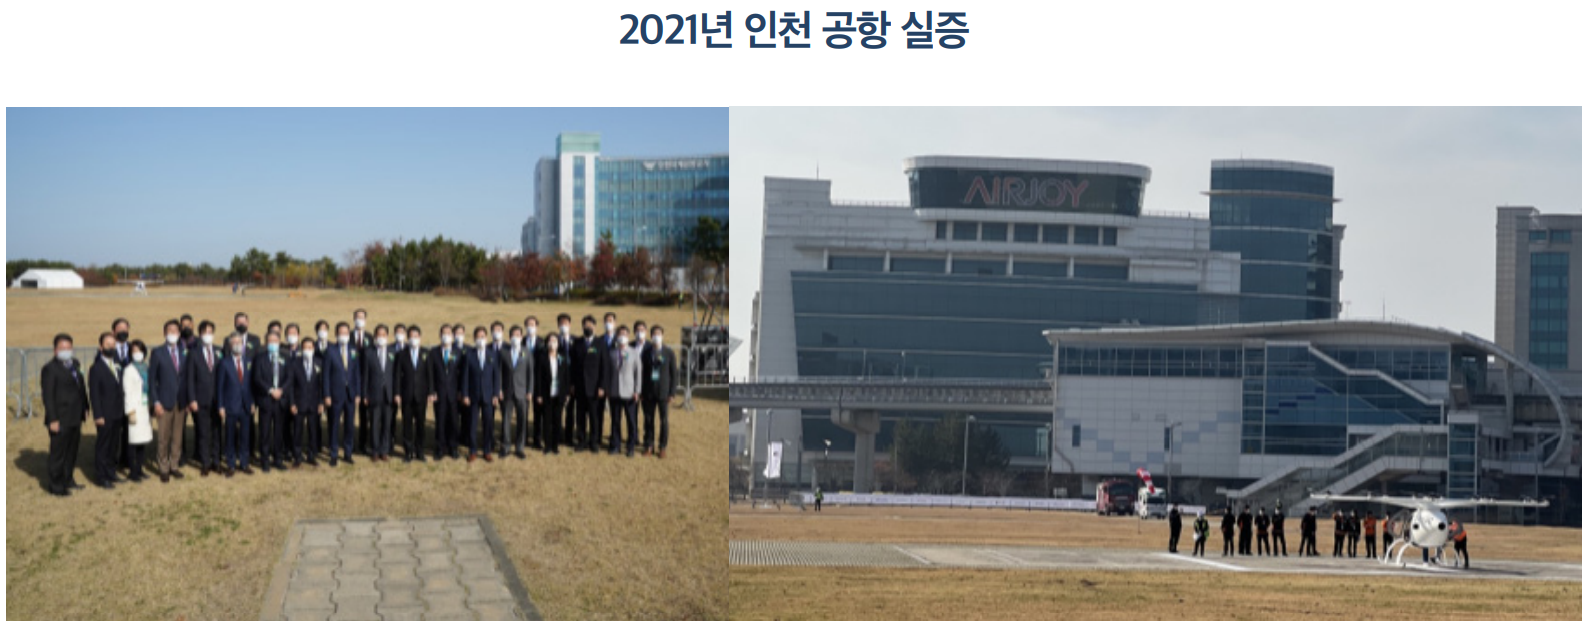 2021년 인천 공항 실증